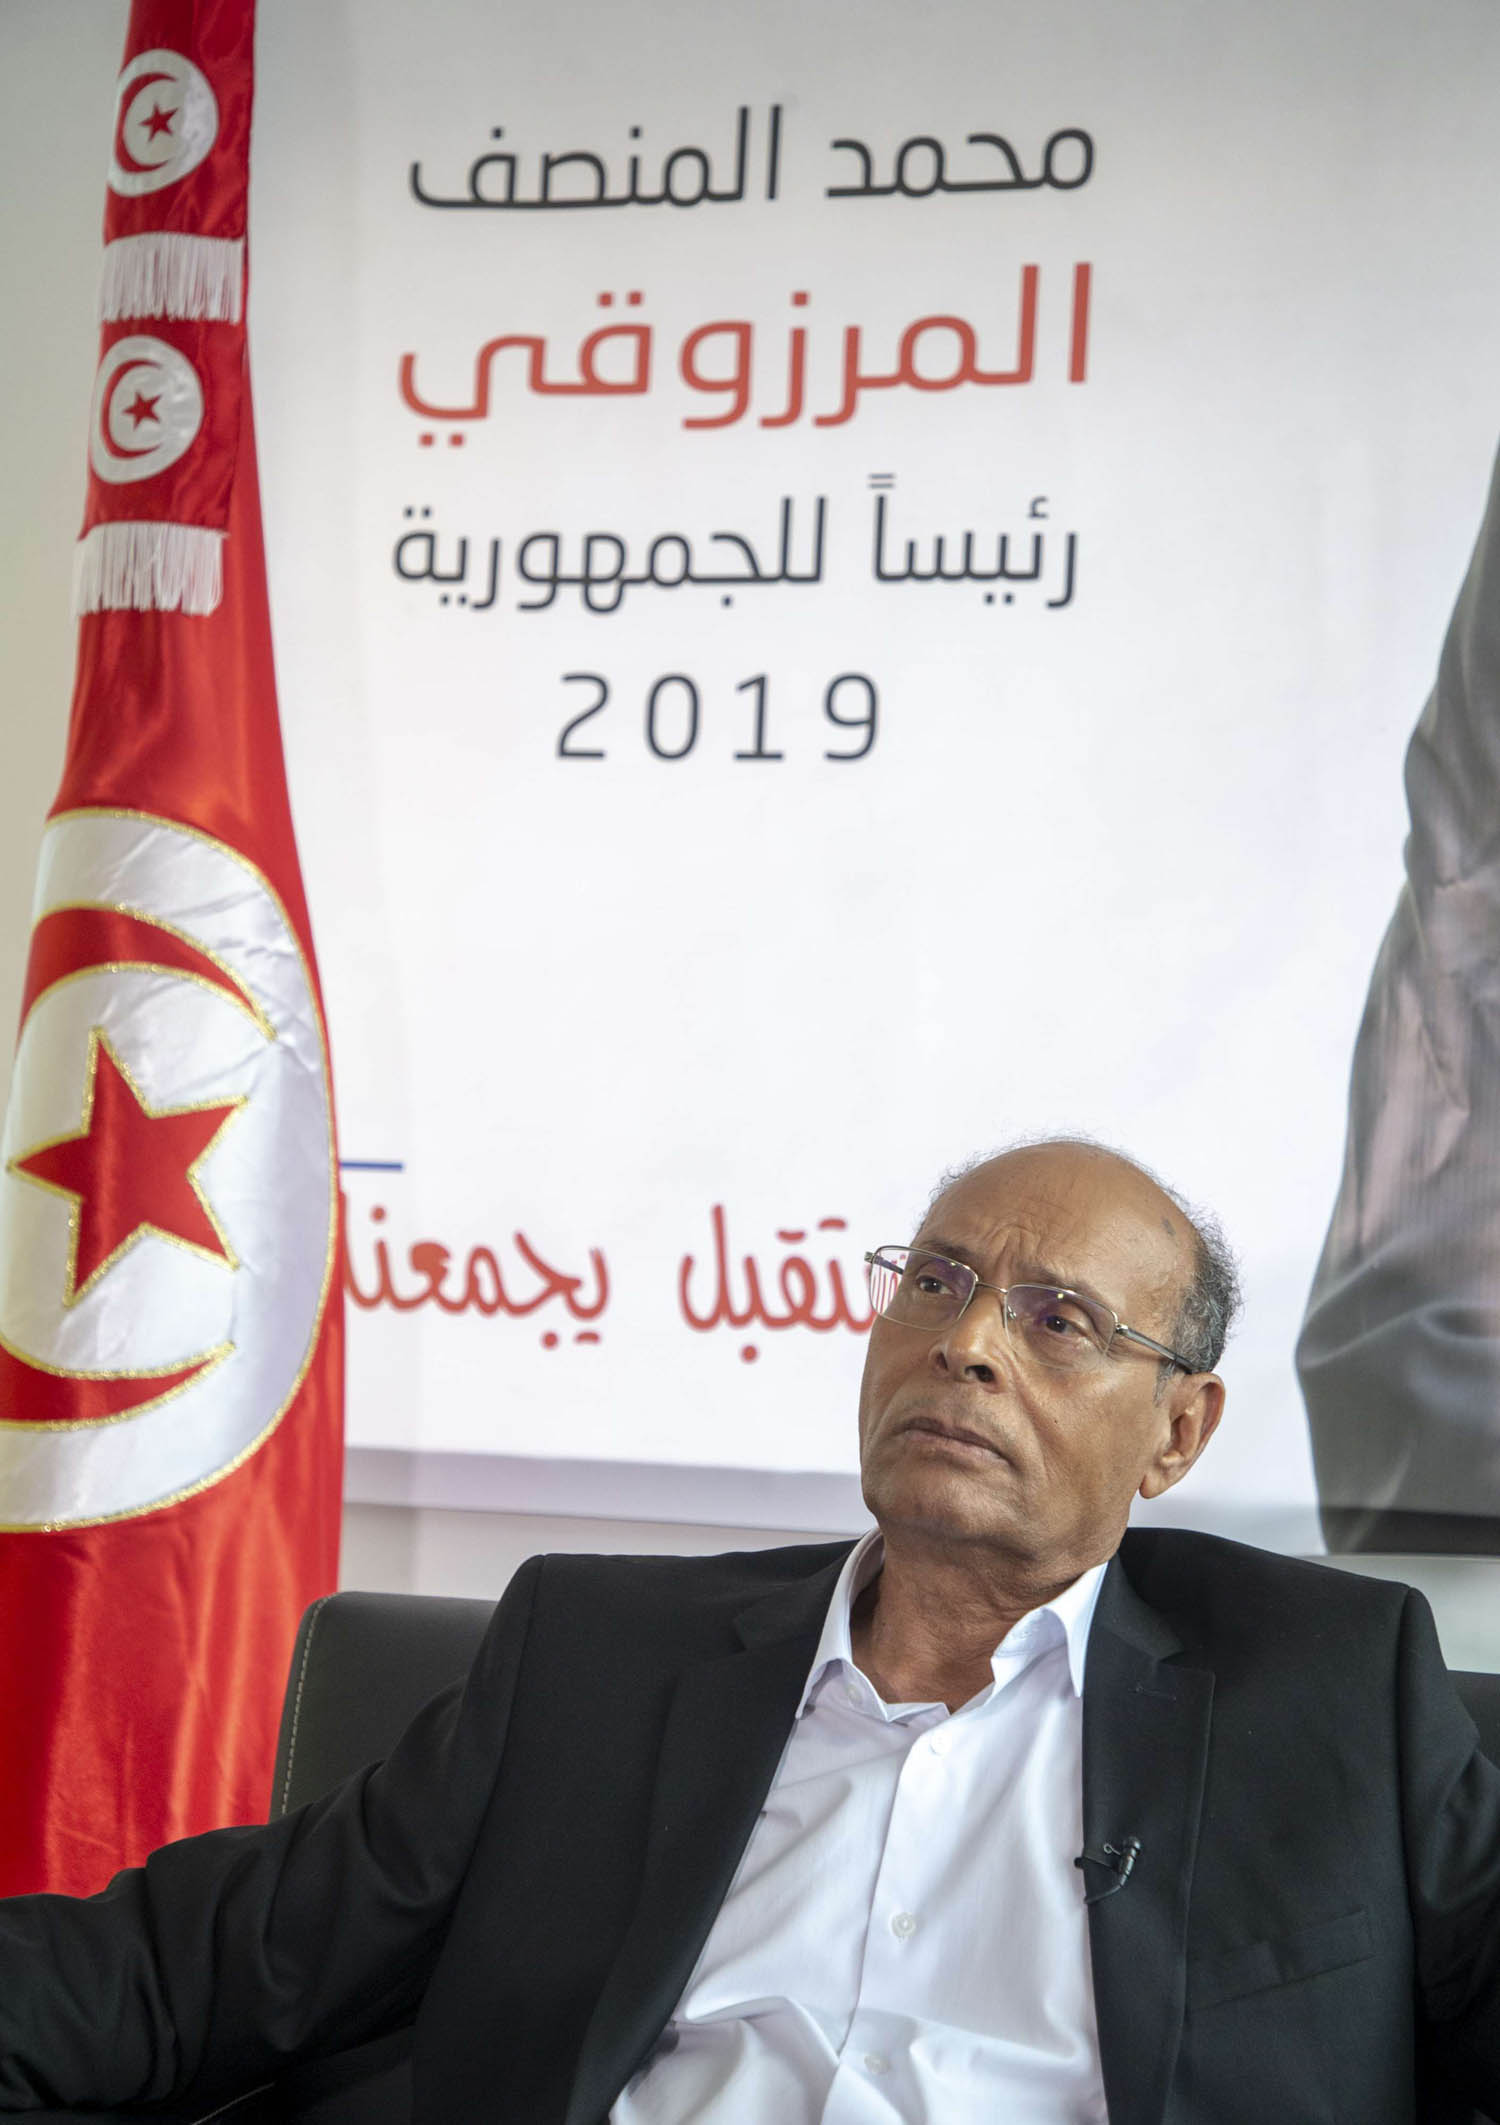 الرئيس التونسي الأسبق المنصف المرزوقي خلال حملته الرئاسية